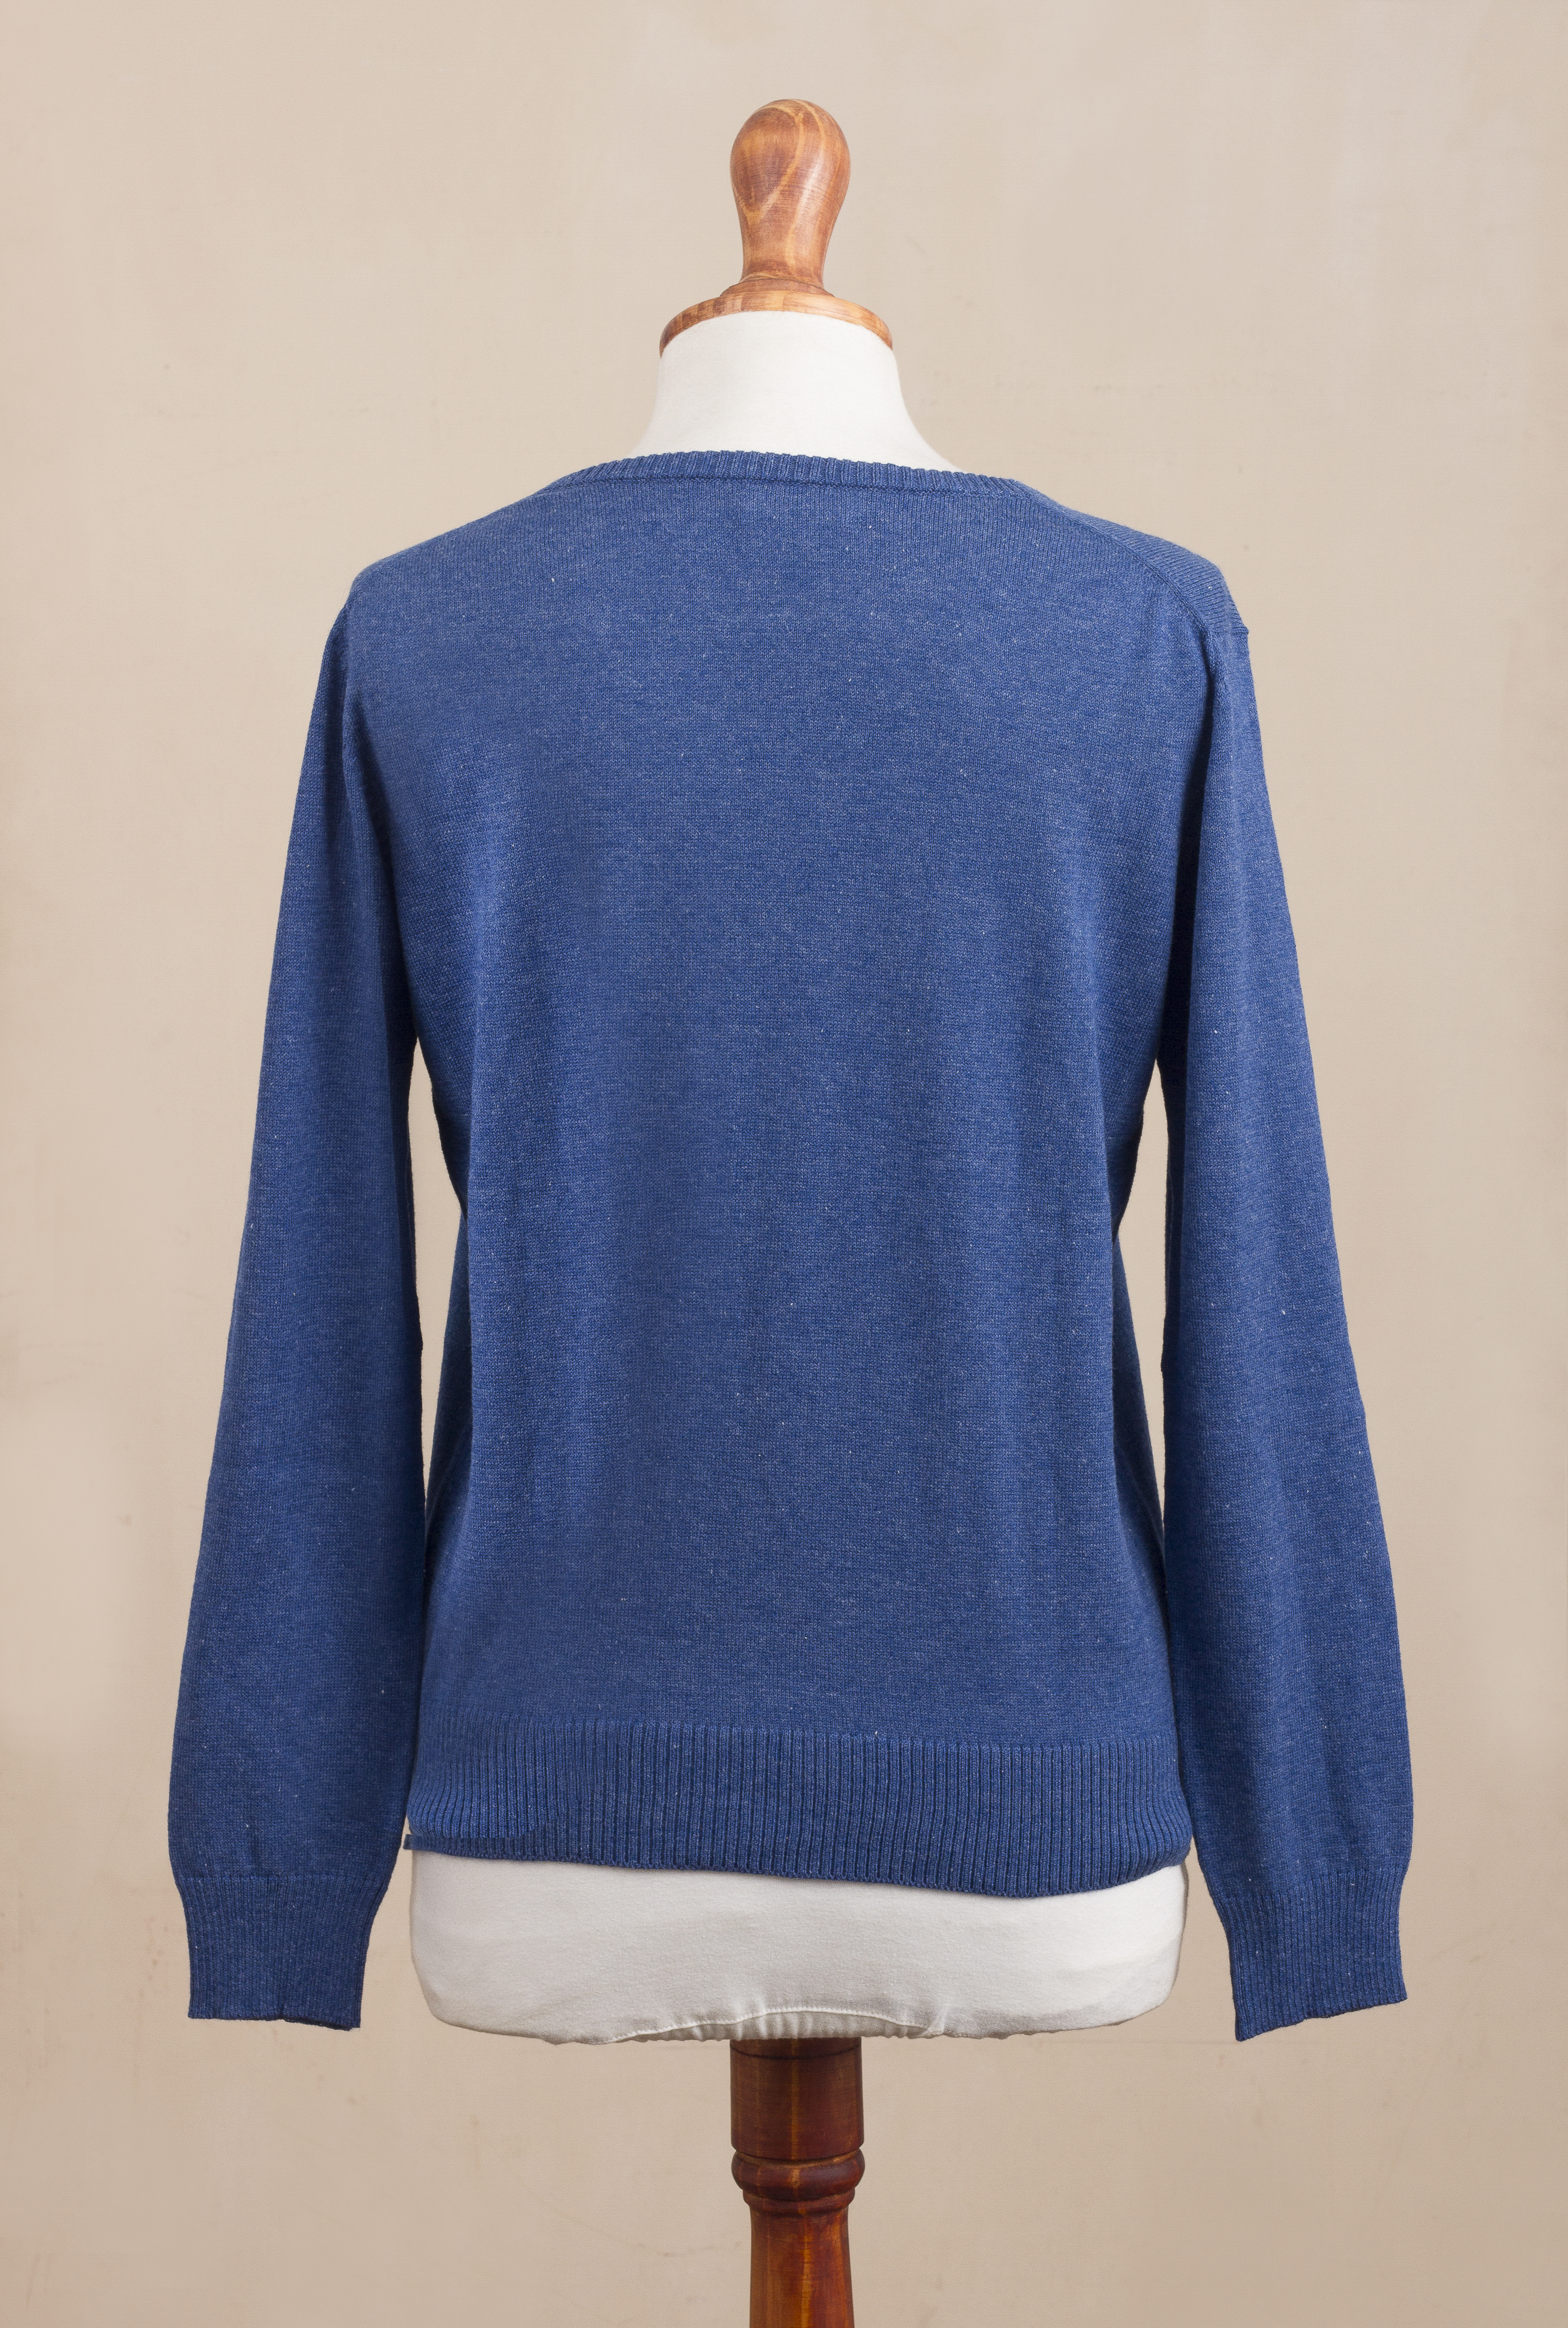 Pullover aus Baumwollmischung, 'Casual Comfort in Royal Blue' - Strickpullover aus Baumwollmischung in Königsblau aus Peru